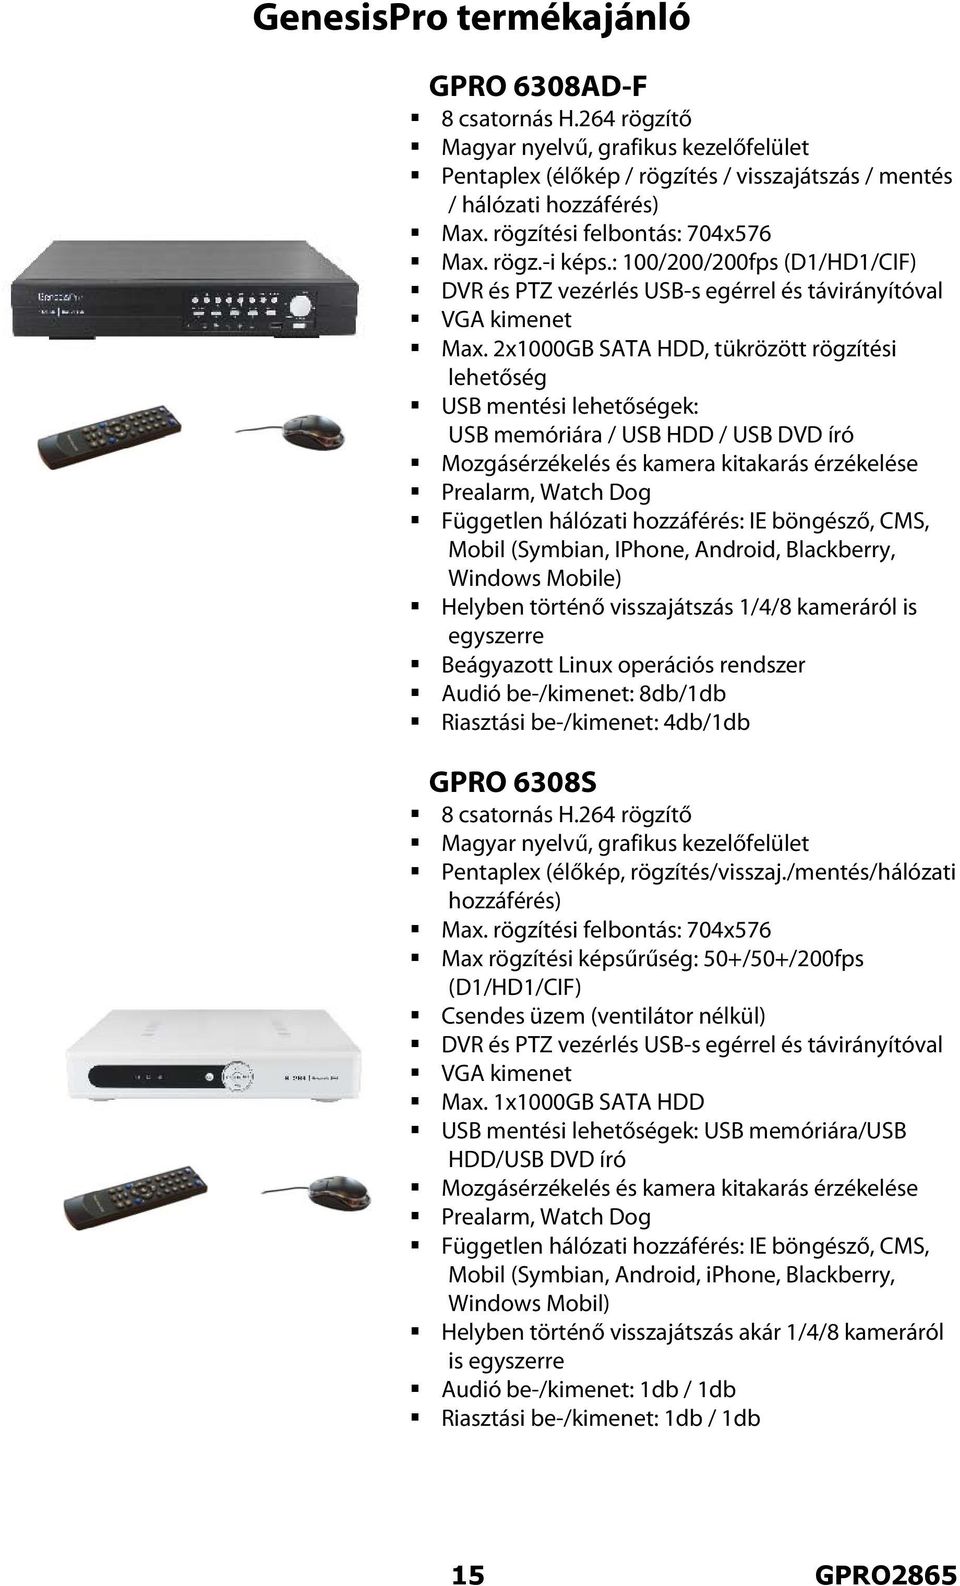 2x1000GB SATA HDD, tükrözött rögzítési lehetőség USB mentési lehetőségek: USB memóriára / USB HDD / USB DVD író Mozgásérzékelés és kamera kitakarás érzékelése Prealarm, Watch Dog Független hálózati